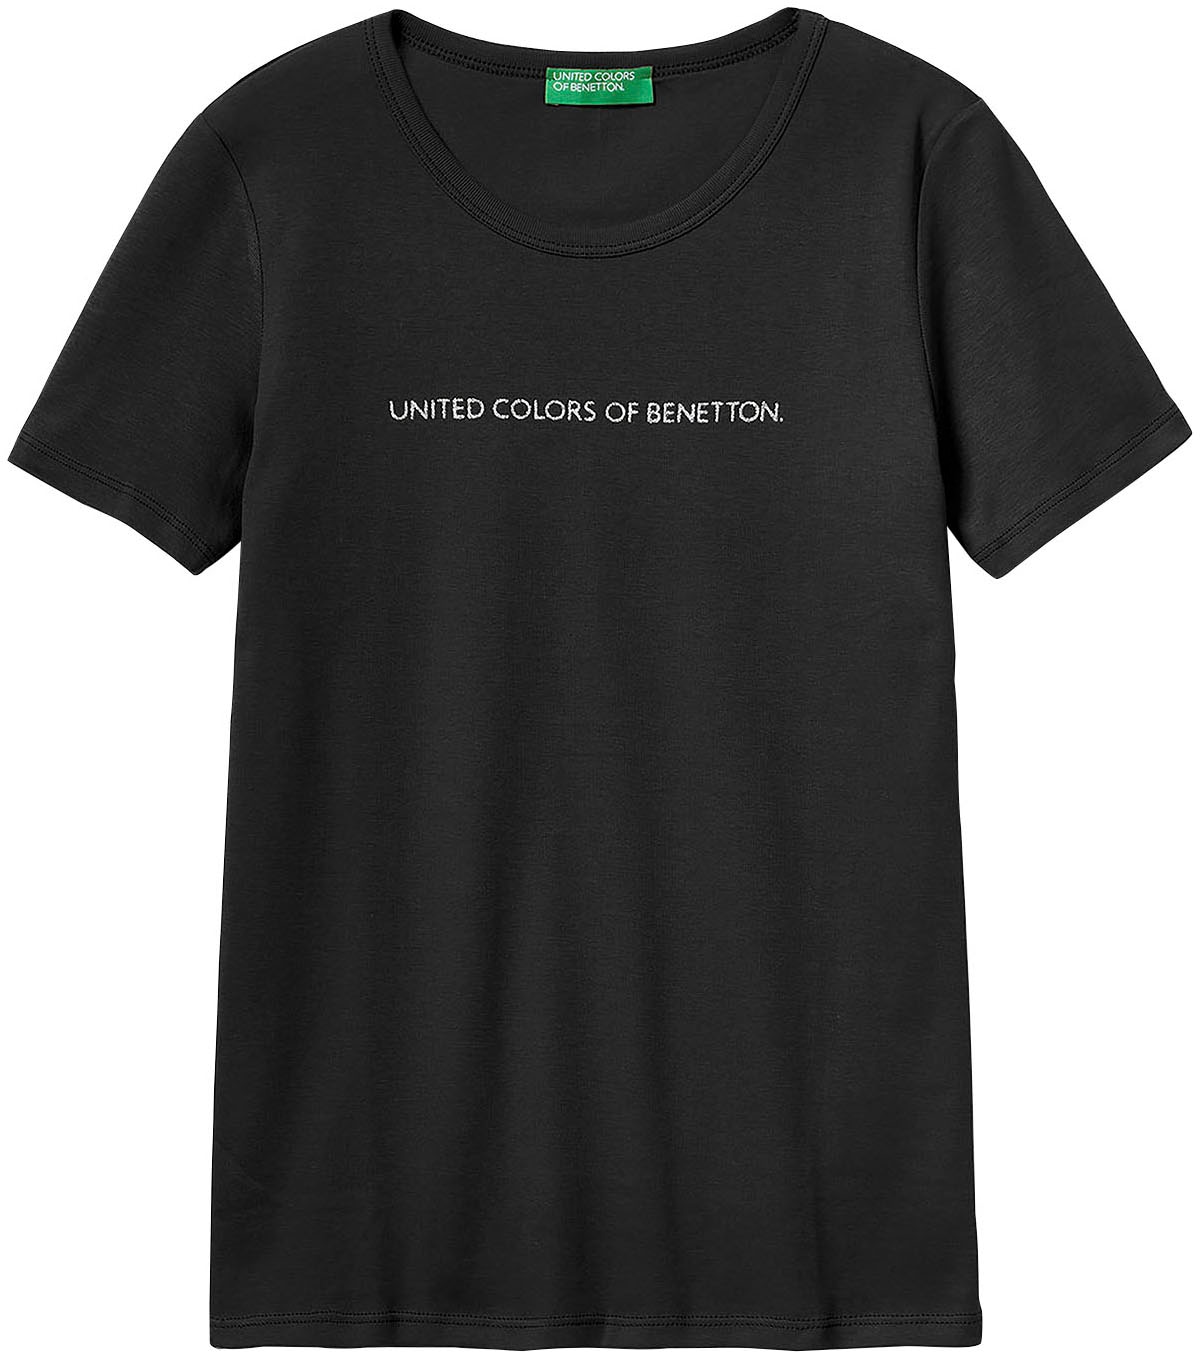 Label-Print bequem T-Shirt, United Colors Benetton vorn kaufen of mit glitzerndem